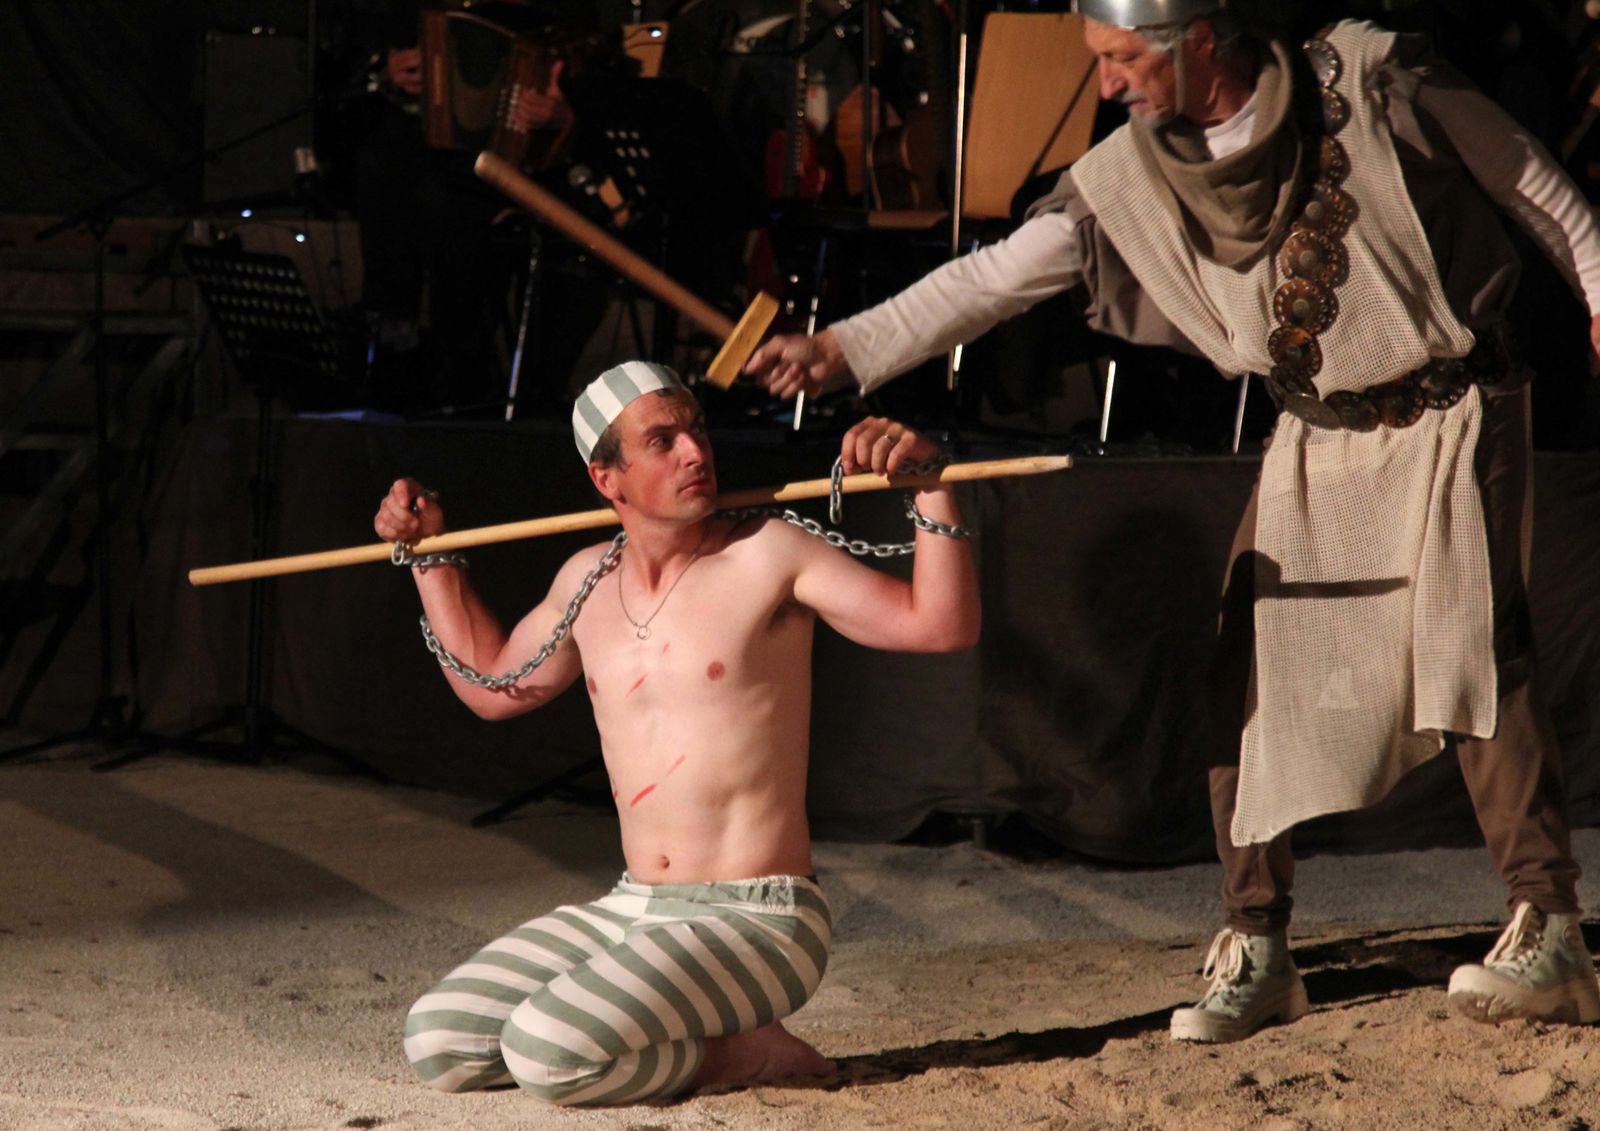 Photos du spectacle des Mattagumber de Mooslargue : Don Quichotte - Acte I - Août 2011

(photos Gaby Marck - Jacques Saly)